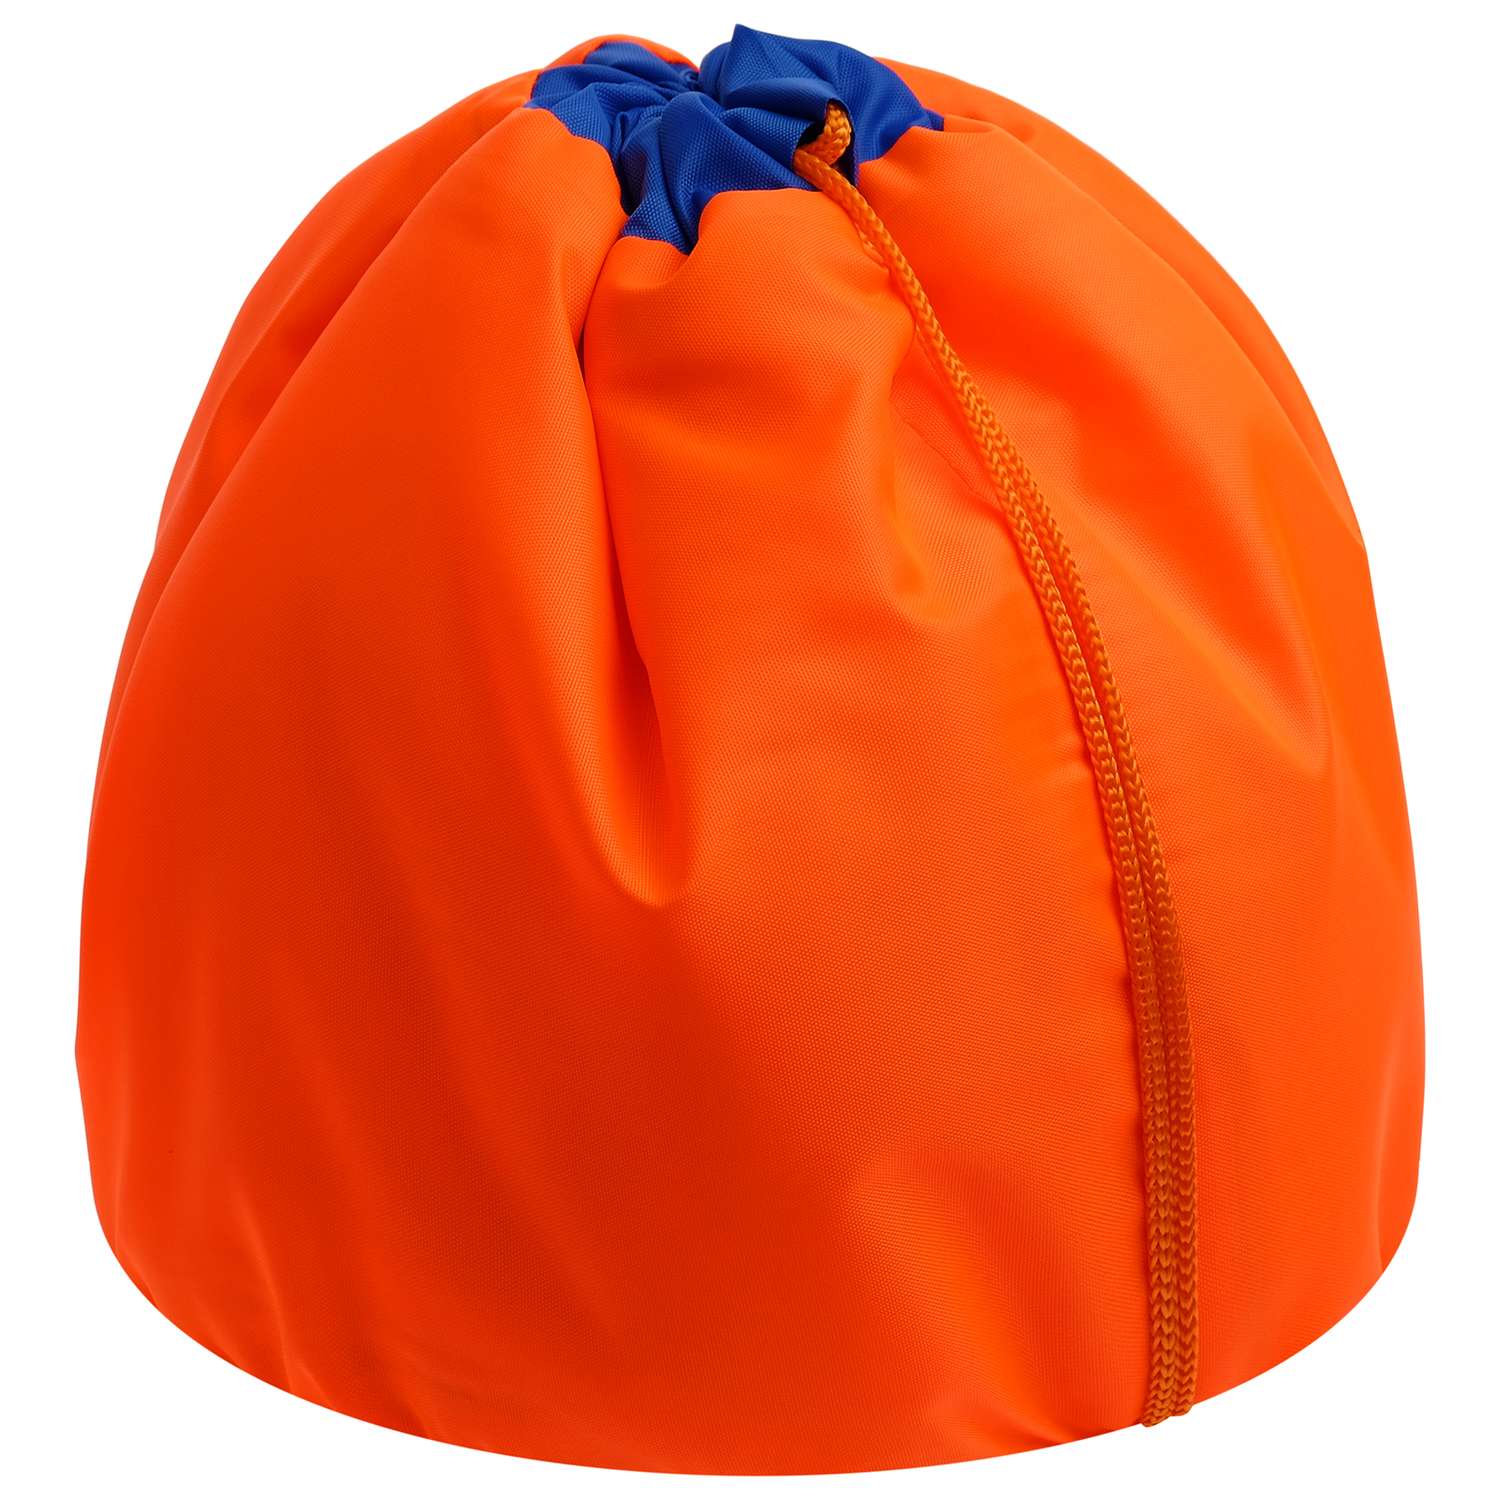 Чехол Grace Dance для мяча гимнастического утепленный цвет оранжевый - фото 1